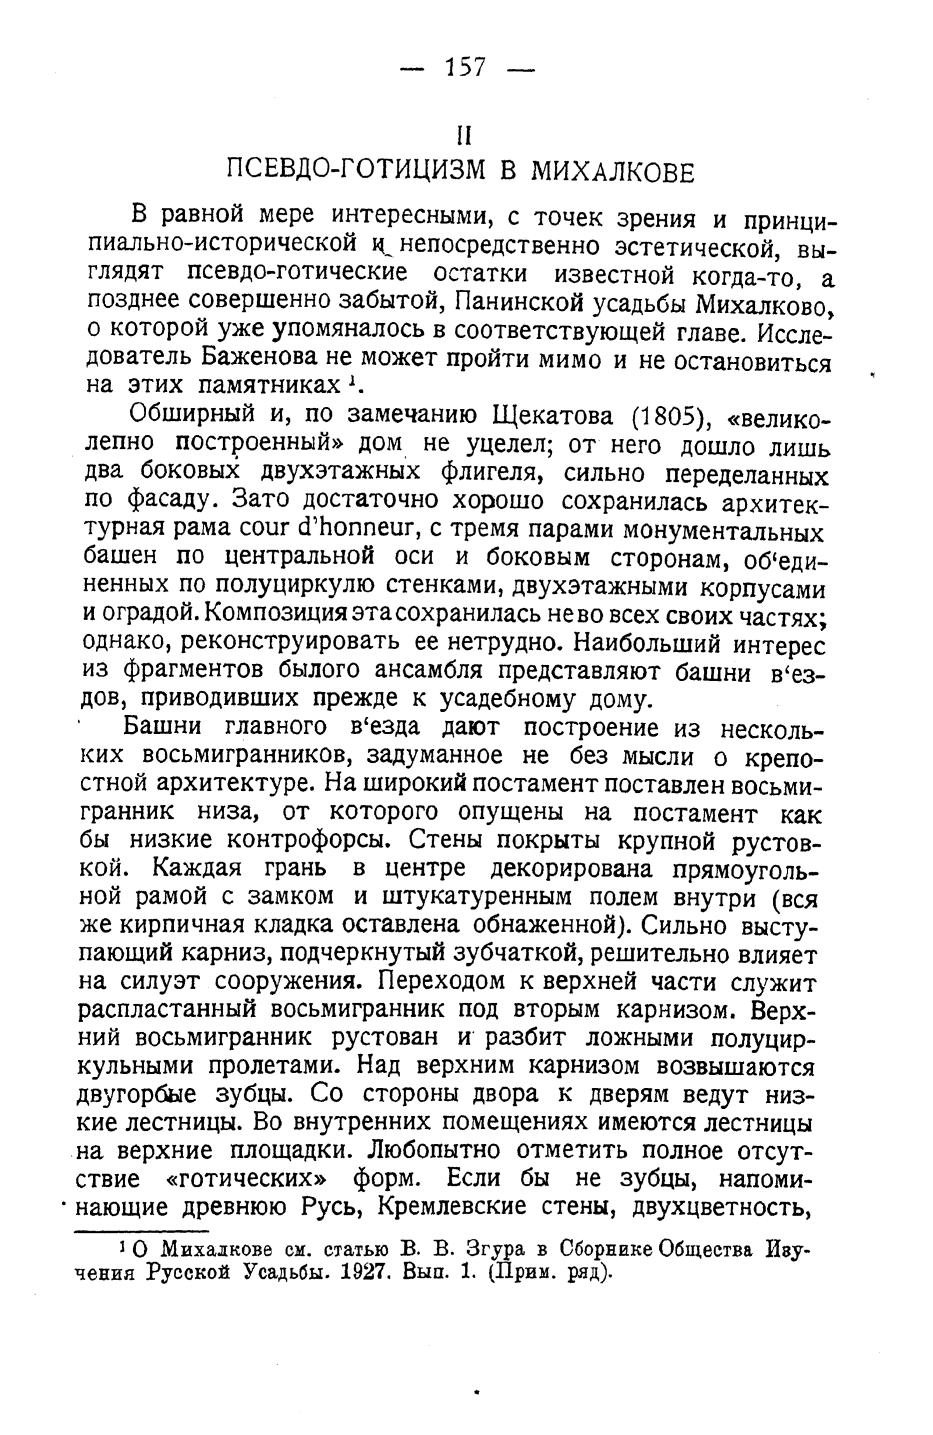 Проблемы и памятники, связанные с В. И. Баженовым / В. В. Згура. — Москва, 1928